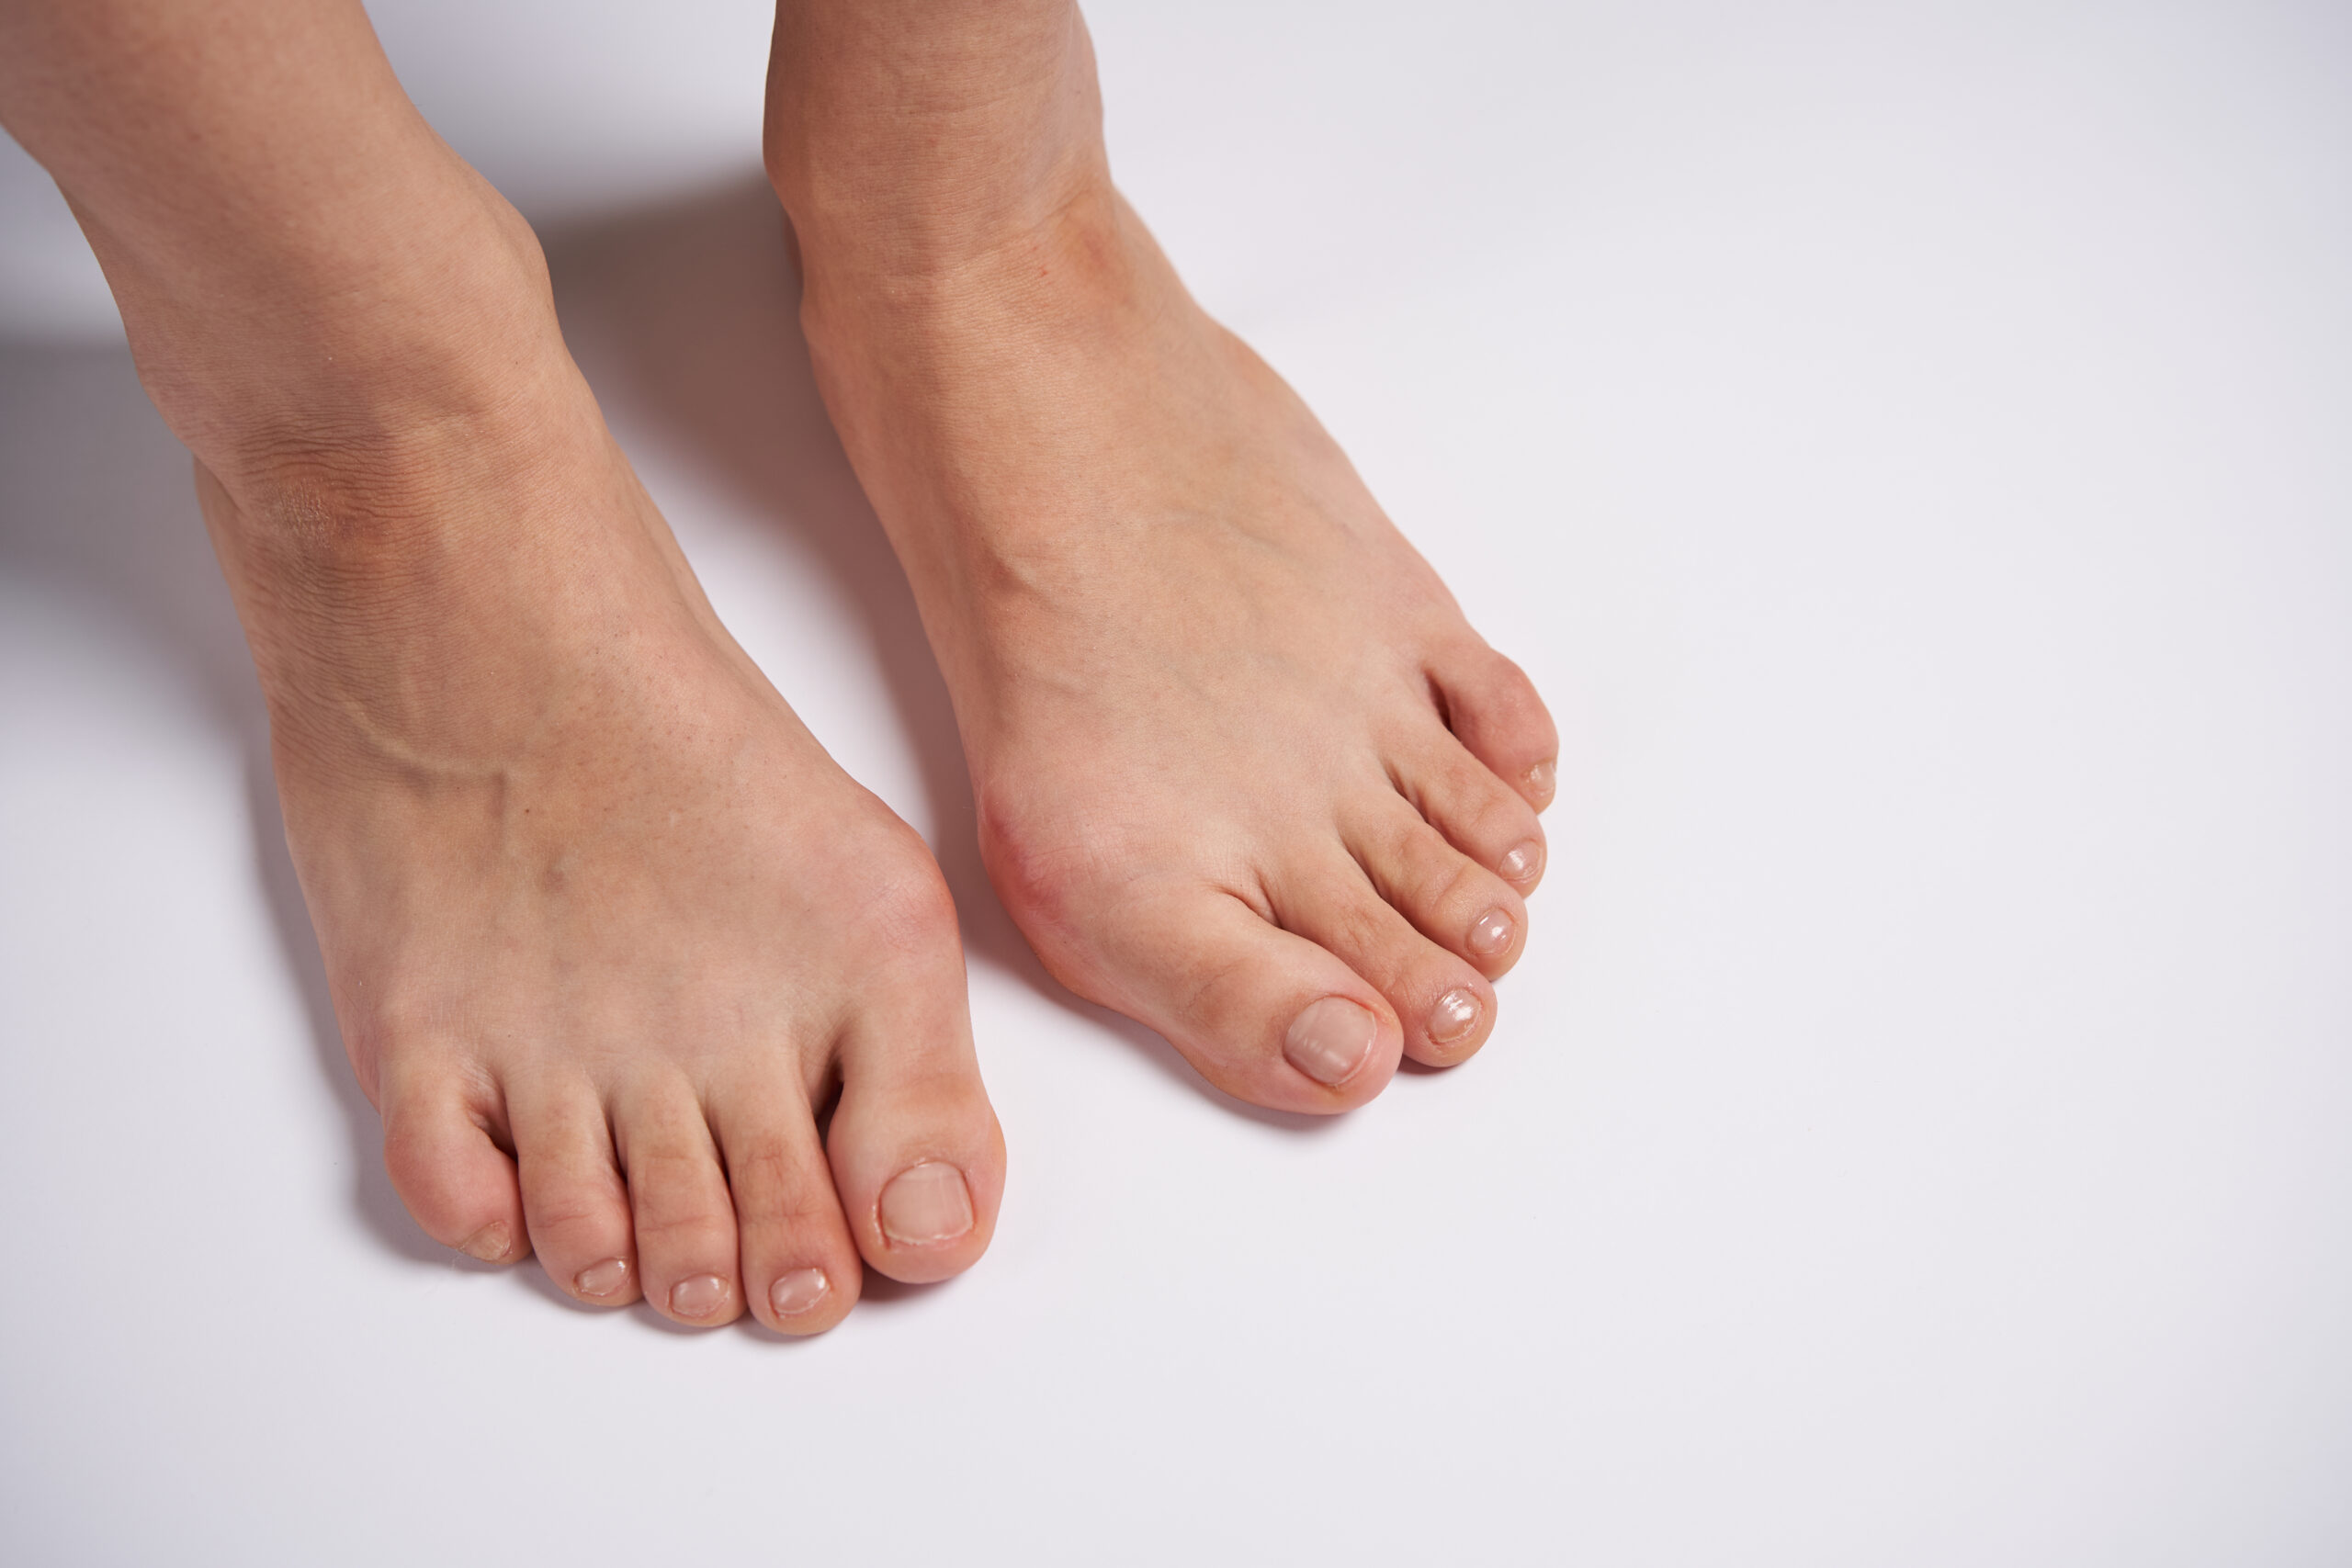 外反母趾の写真
足の悩みは何ですか？
NWPL社のファンクショナルオーソティックス®およびファンクショナルインソール
理学療法士、鍼灸師が担当する無料悩み相談"足のお悩み相談会" 　外反母趾写真